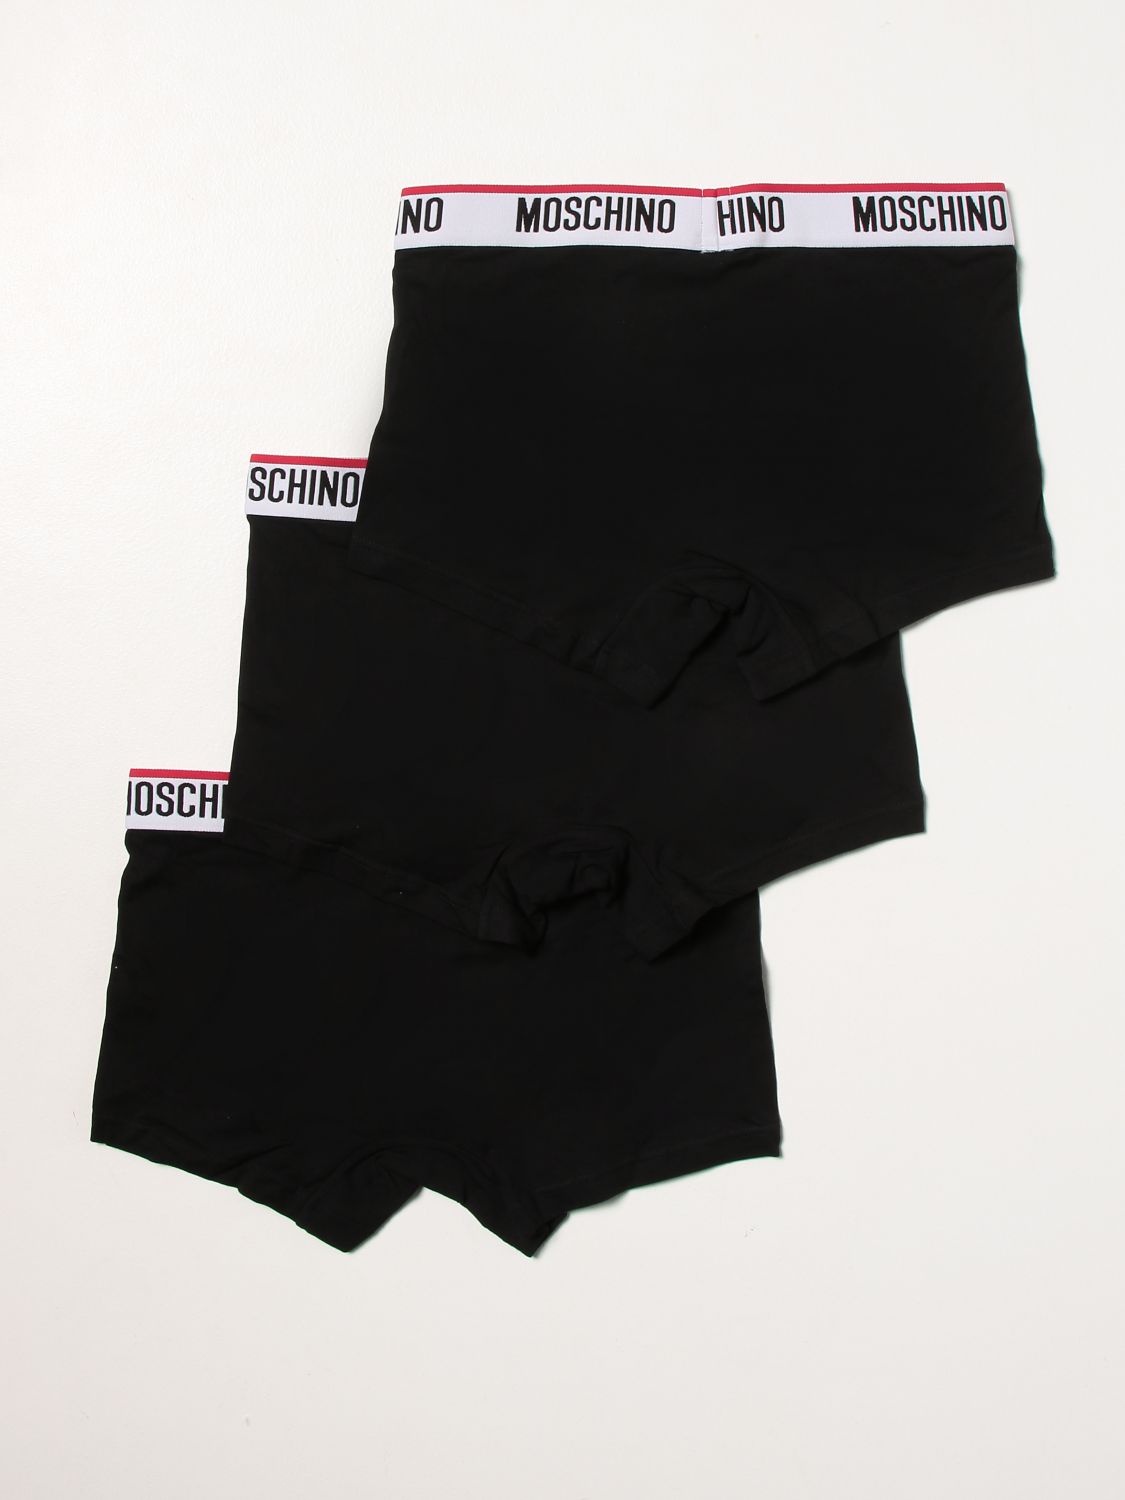 アンダーウェア Moschino Underwear: アンダーウェア メンズ Moschino Underwear ブラック 1 2